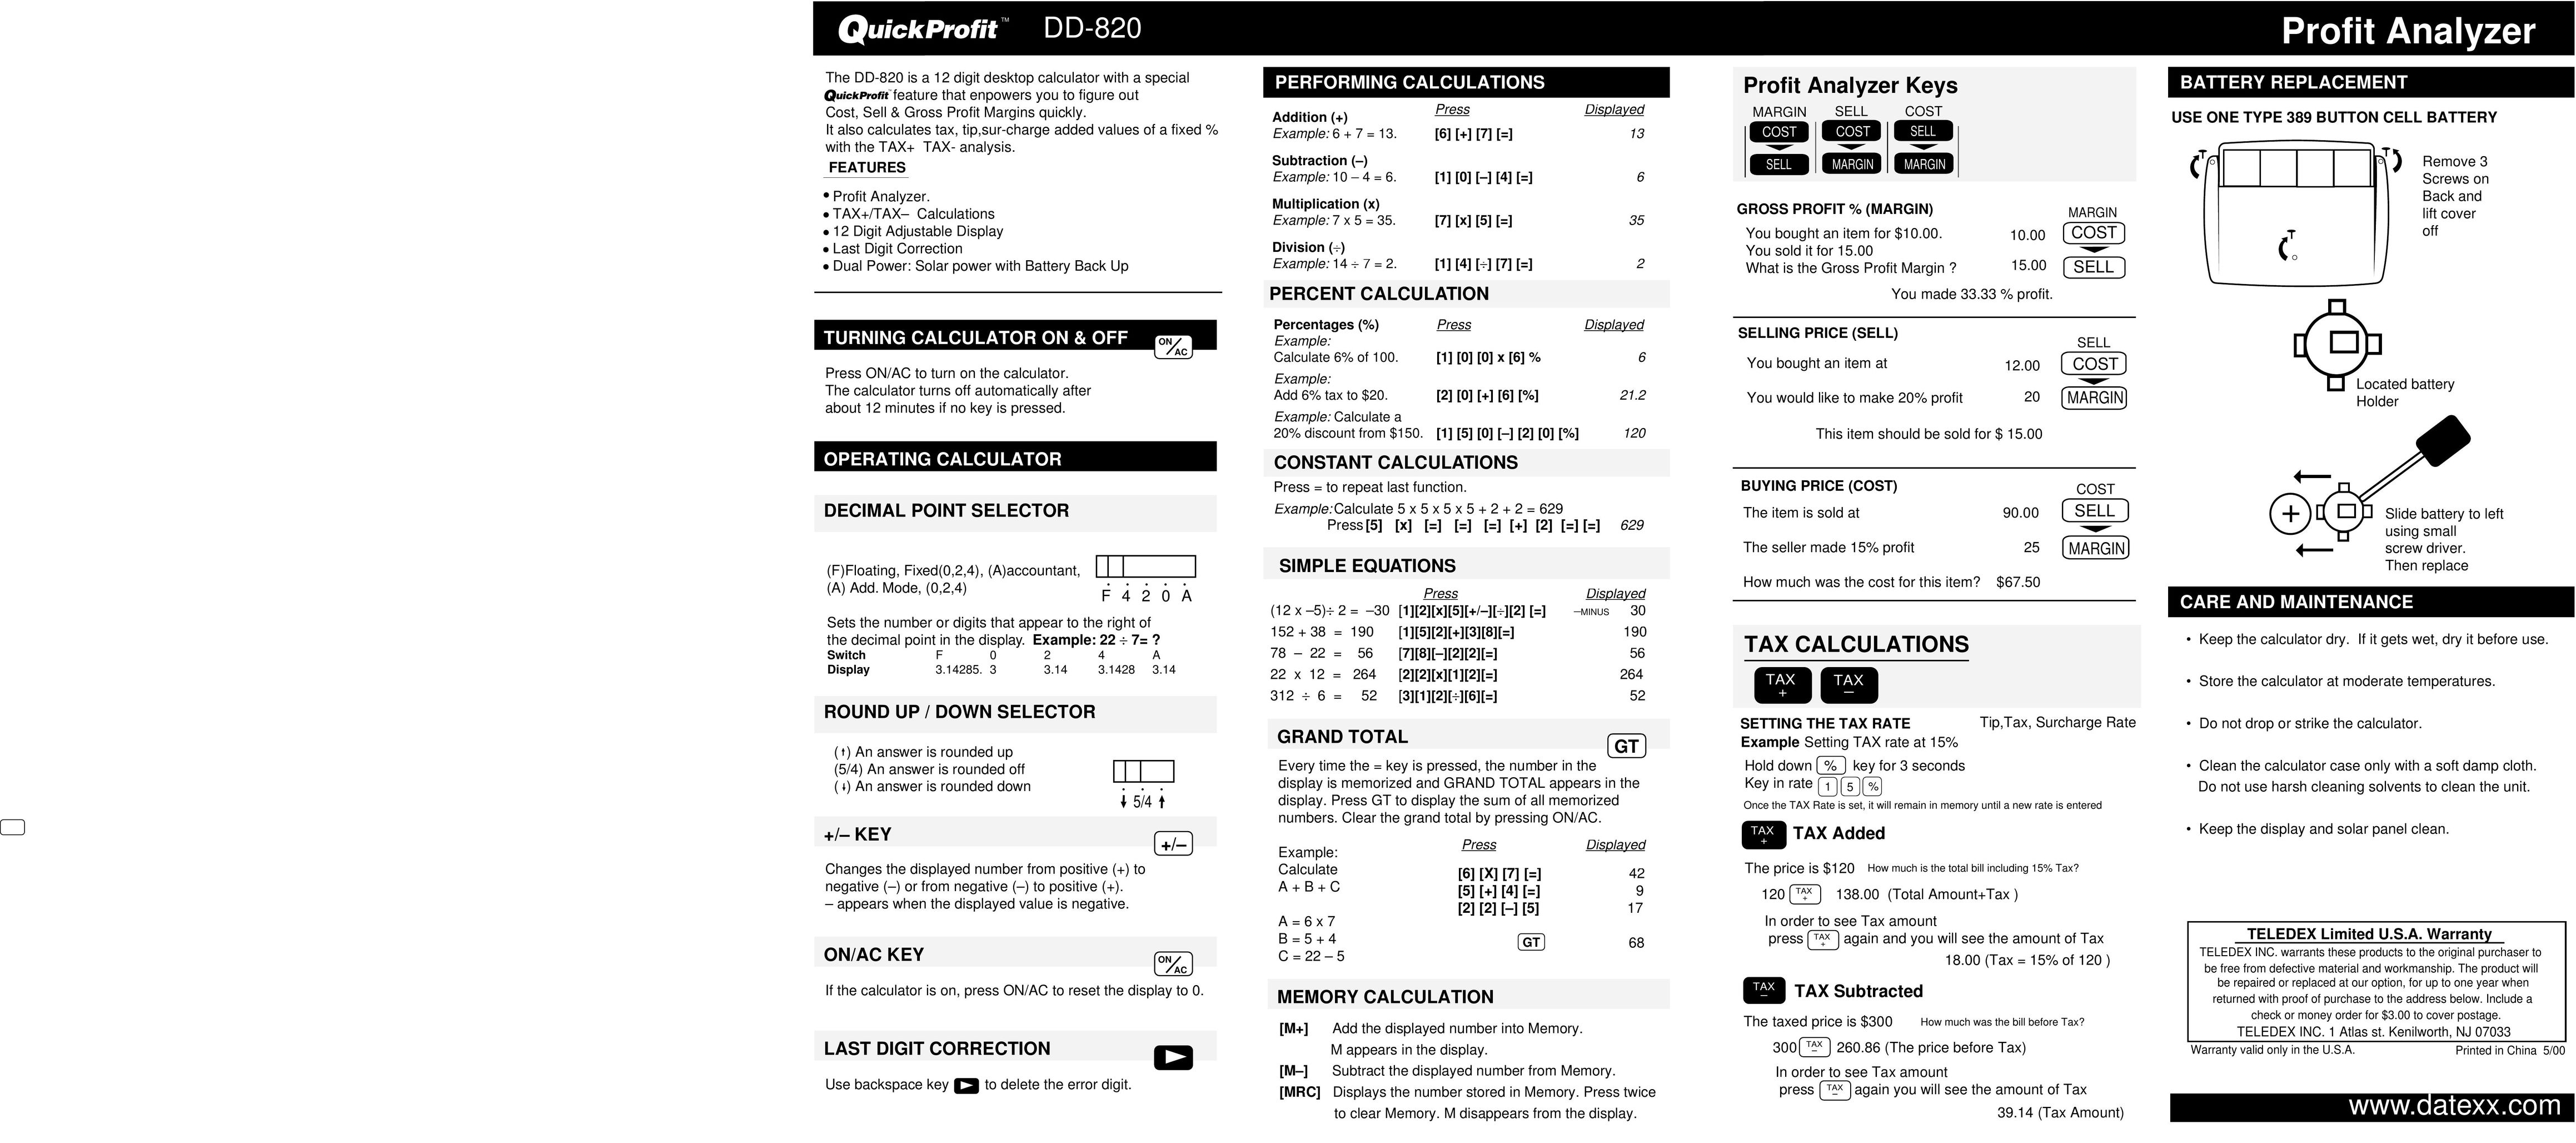 Datexx DD-820 Calculator User Manual